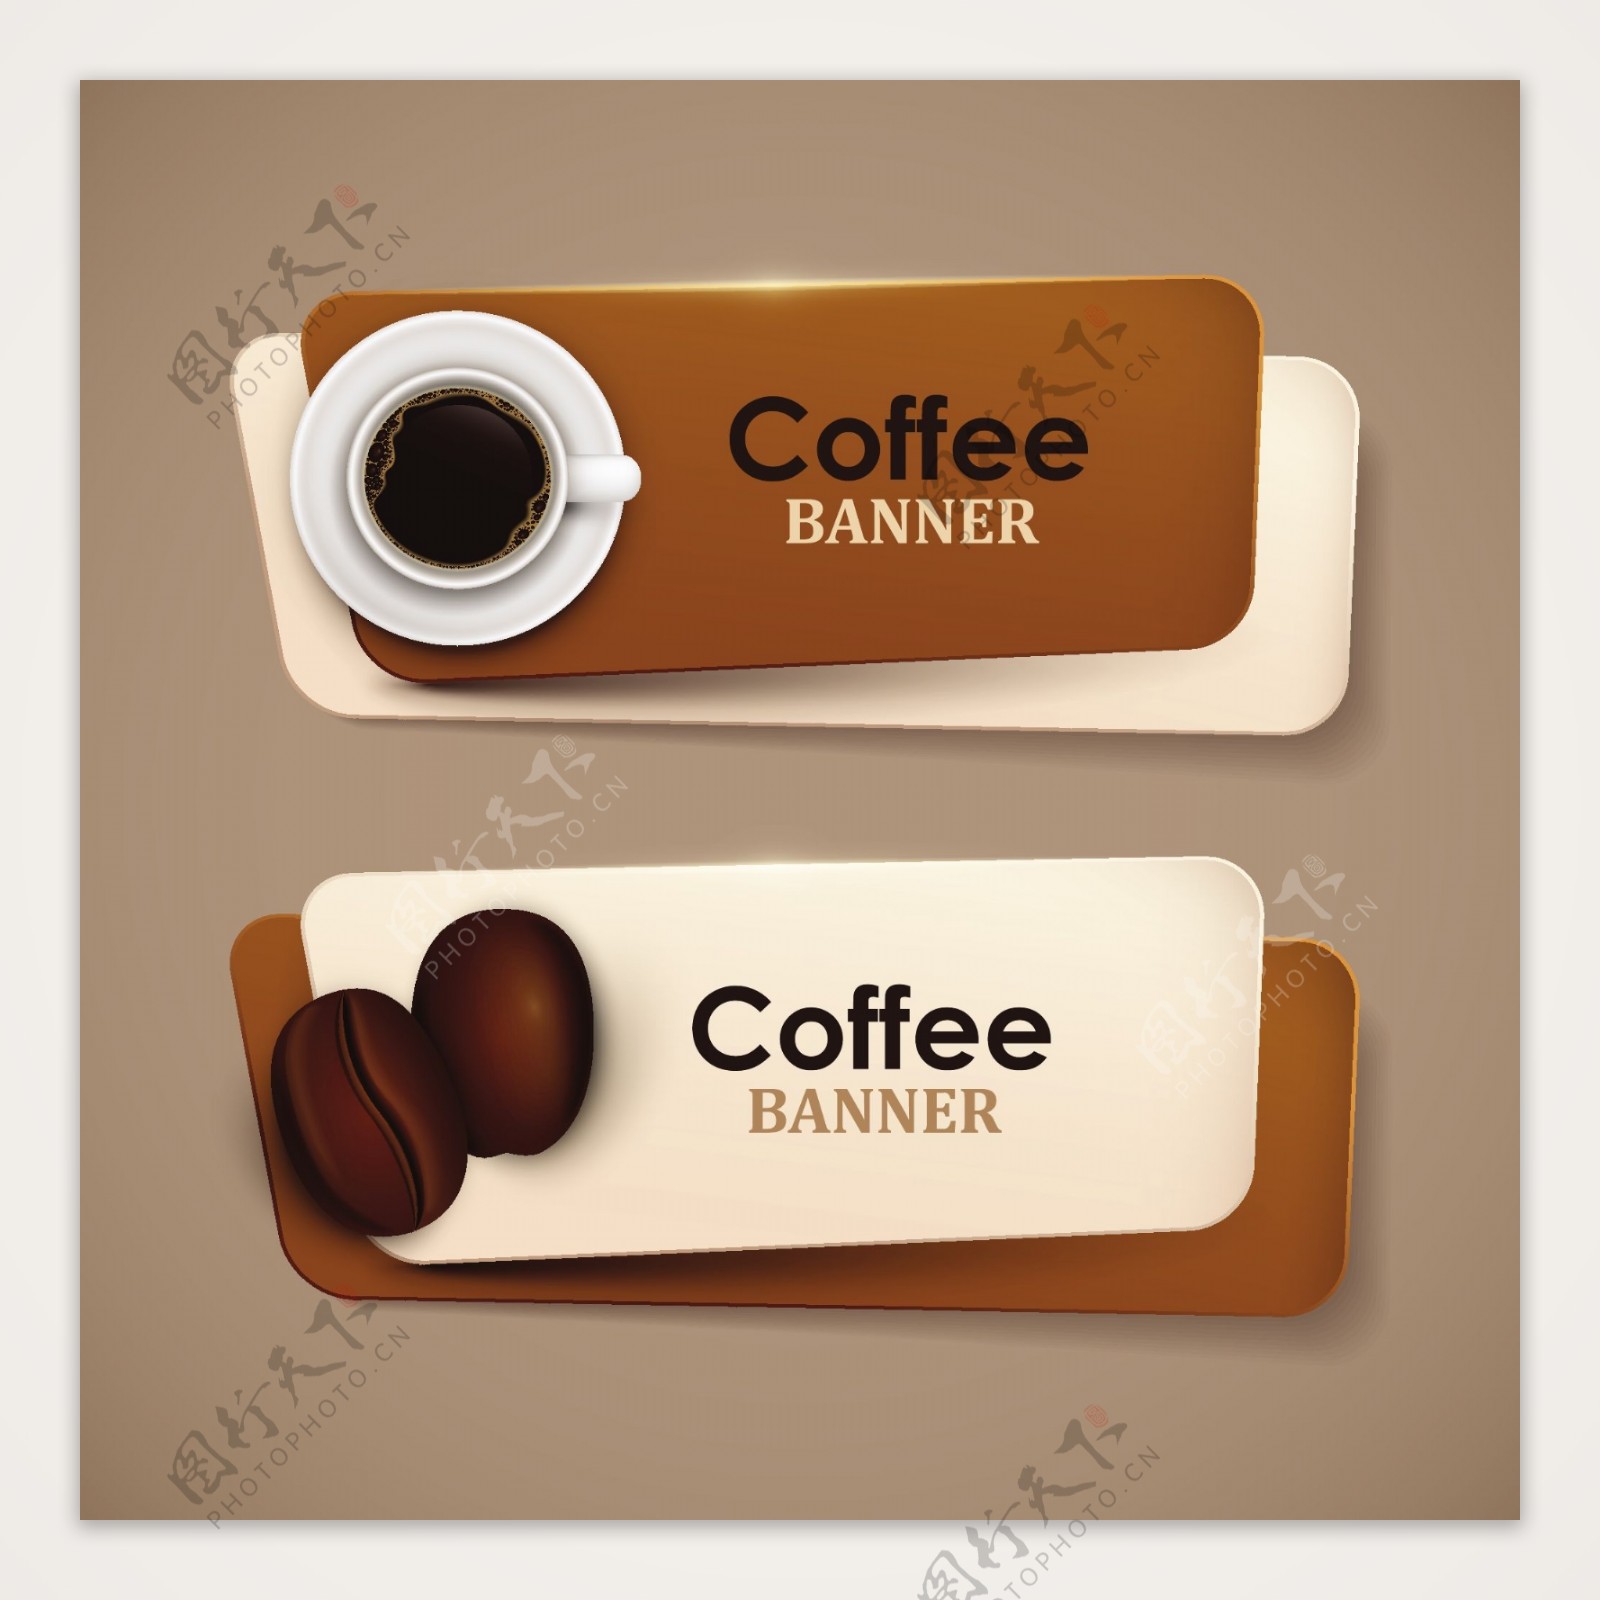 咖啡巧克力主体海报设计矢量素材